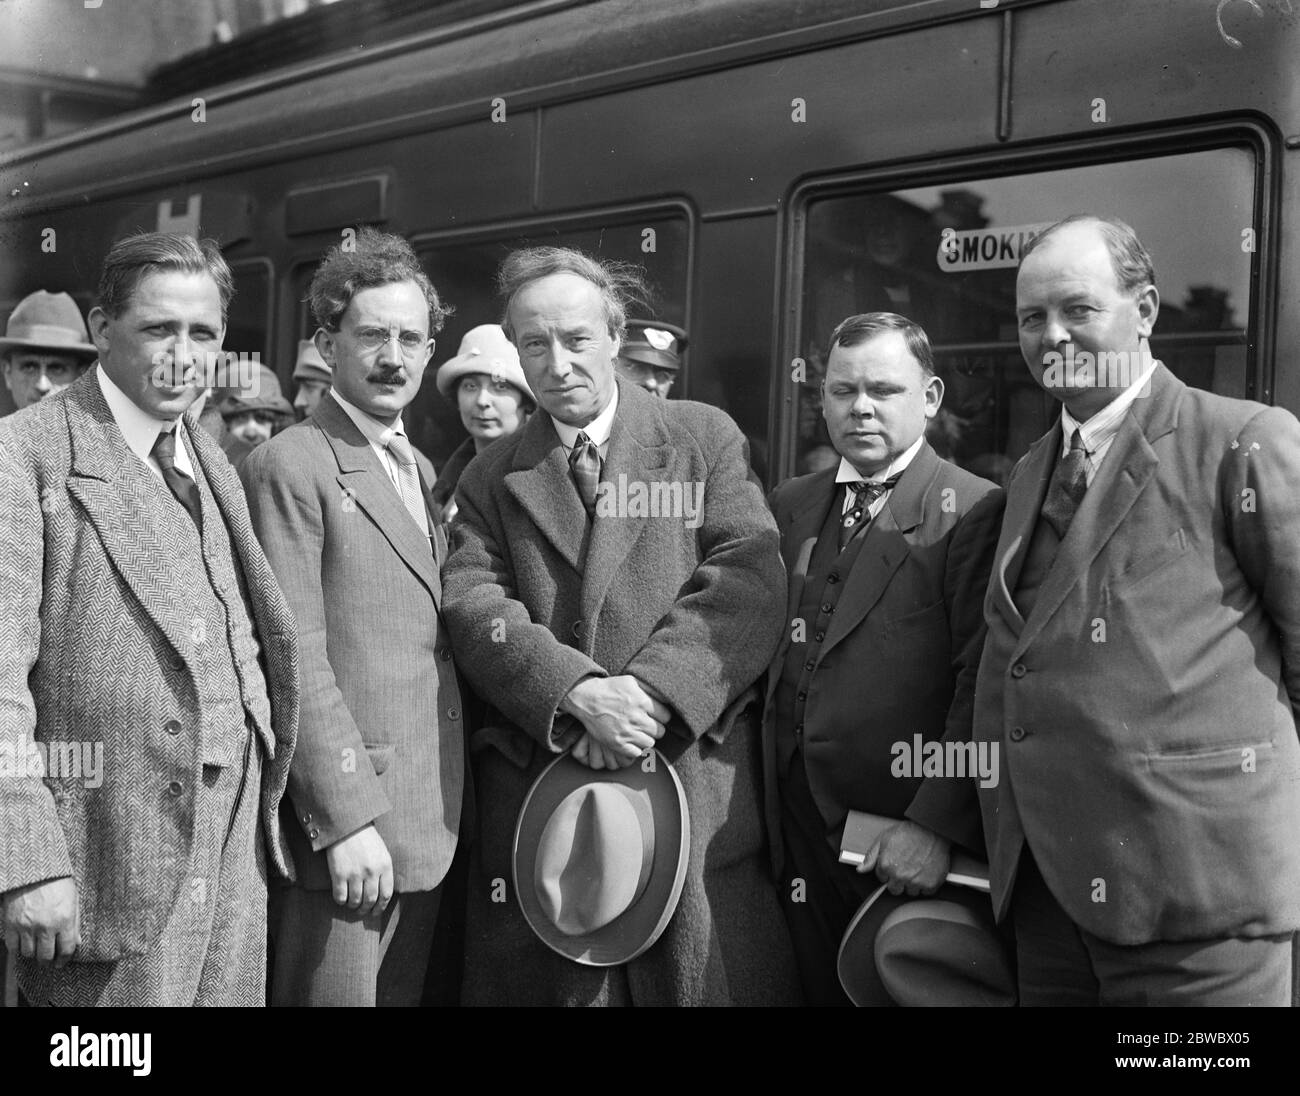 Labor MP 's verlassen für Russland, um Handelsmöglichkeiten zu untersuchen. Von links nach rechts: R A Taylor, M W P Coates, R C Wallhead, MP, Herr Mardy Jones, MP, Herr Q H Hall, MP, fotografiert in Victoria Station. September 1925 Stockfoto